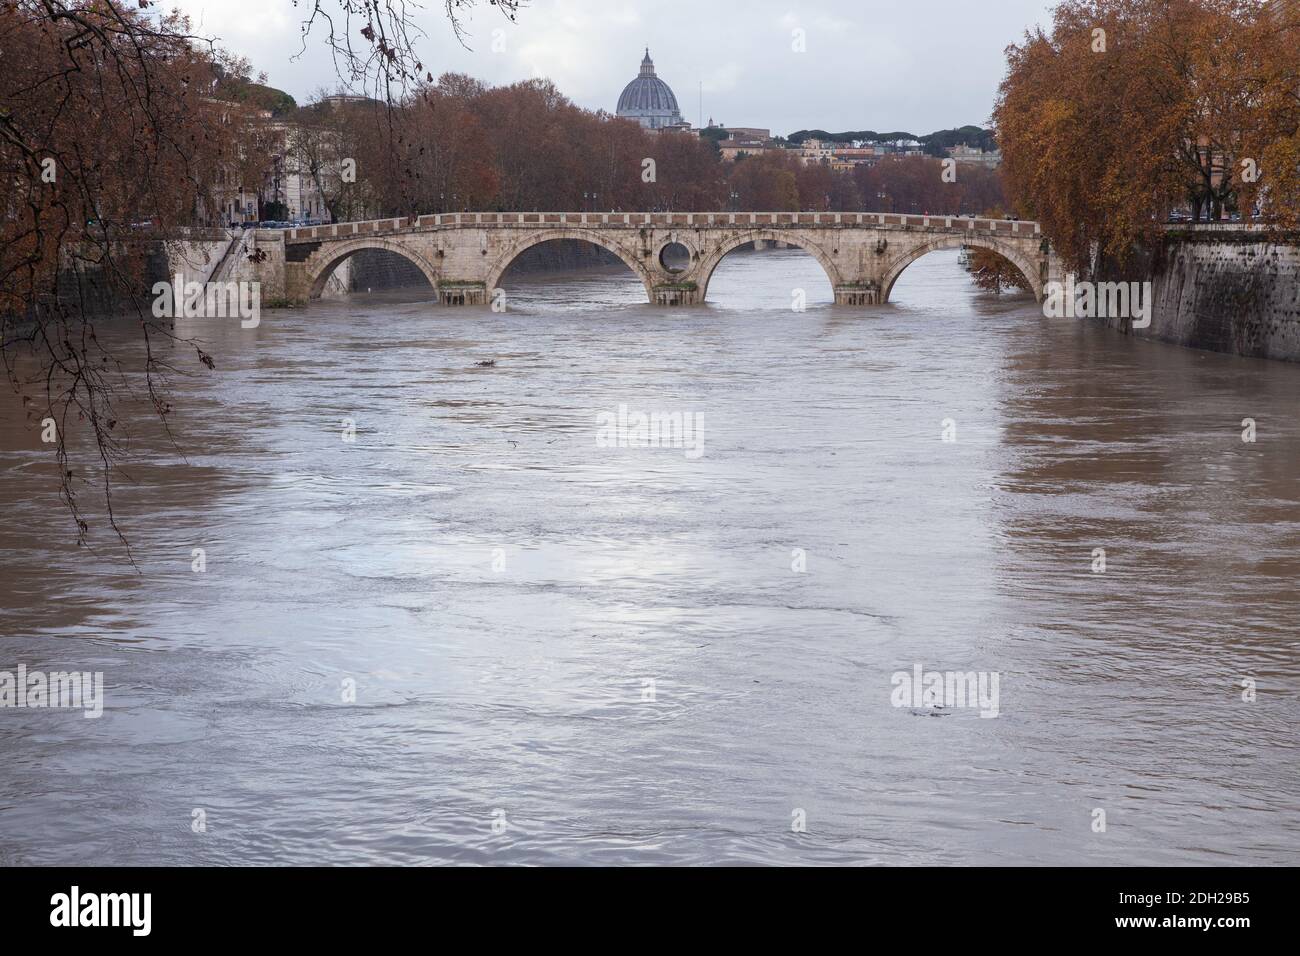 Rom, Italien. Dezember 2020. Blick auf den Tiber in Überschwemmung von der Garibaldi-Brücke (Foto: Matteo Nardone/Pacific Press) Quelle: Pacific Press Media Production Corp./Alamy Live News Stockfoto